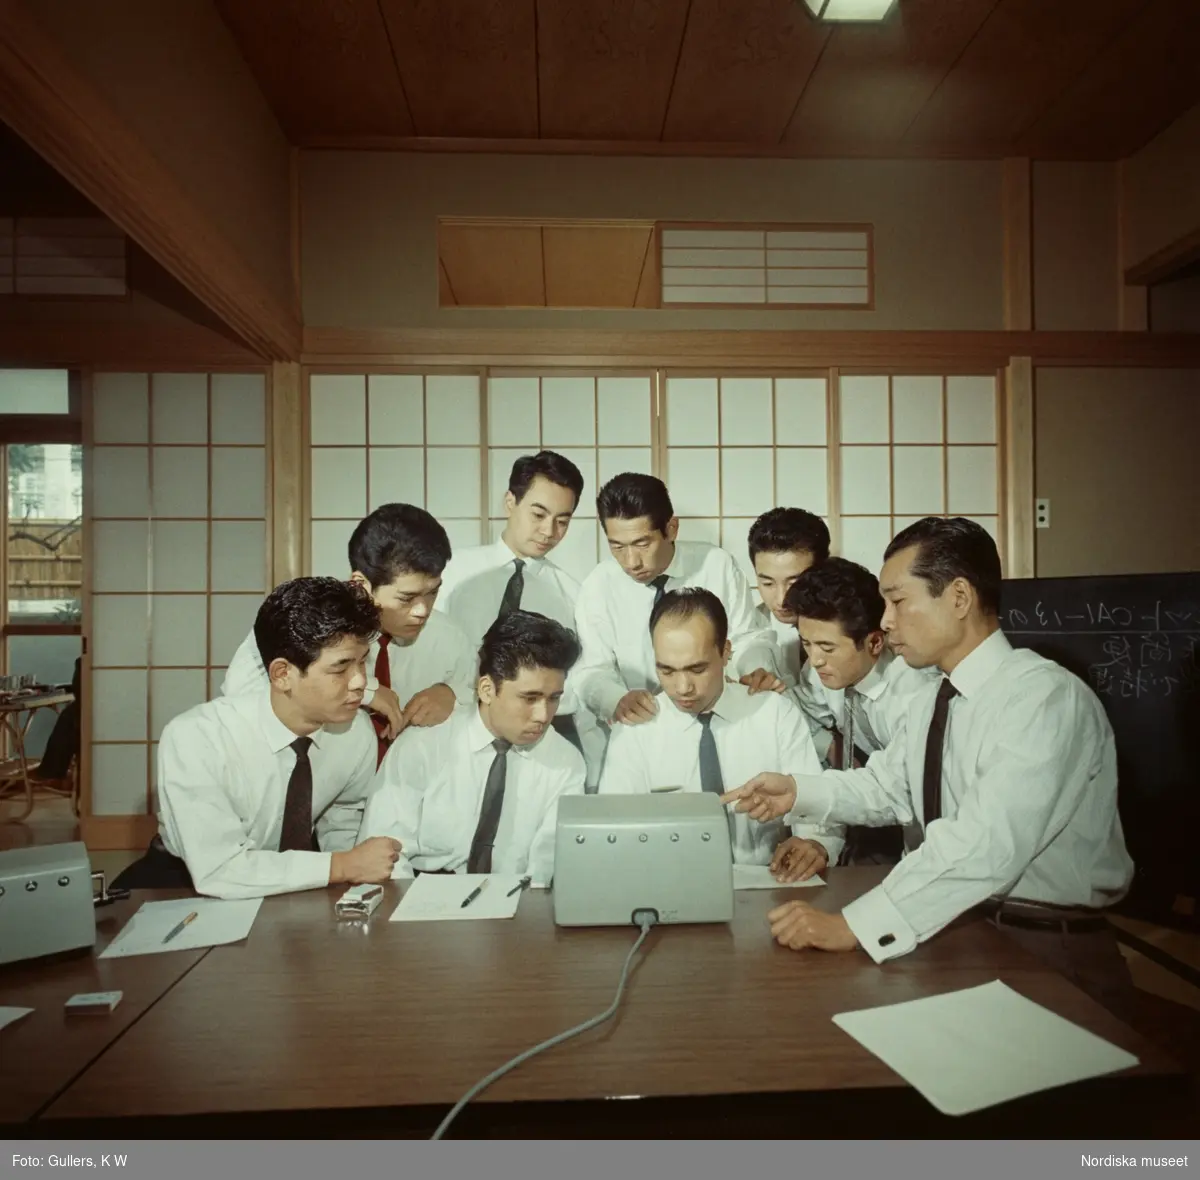 Facit. Nio män i män i vita skjortor och slips samlade runt en elektrisk kontorsmaskin.